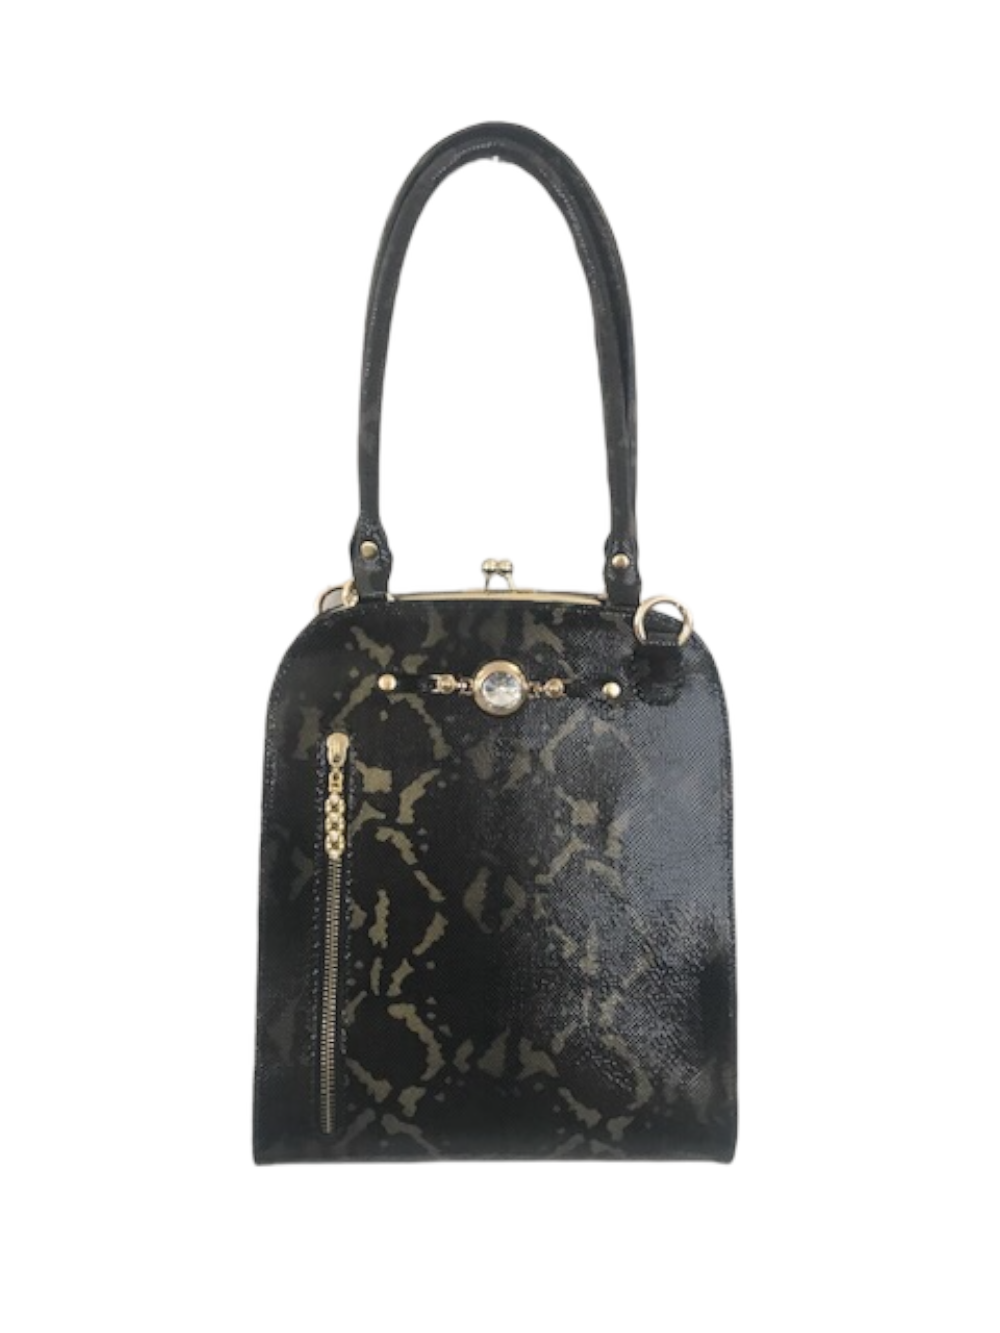 картинка кожаные  "Камалия-06" - Женская кожаная сумка с фермуаром. Черно-оливковая кожа, тиснение под питона от Ирины Берзиной